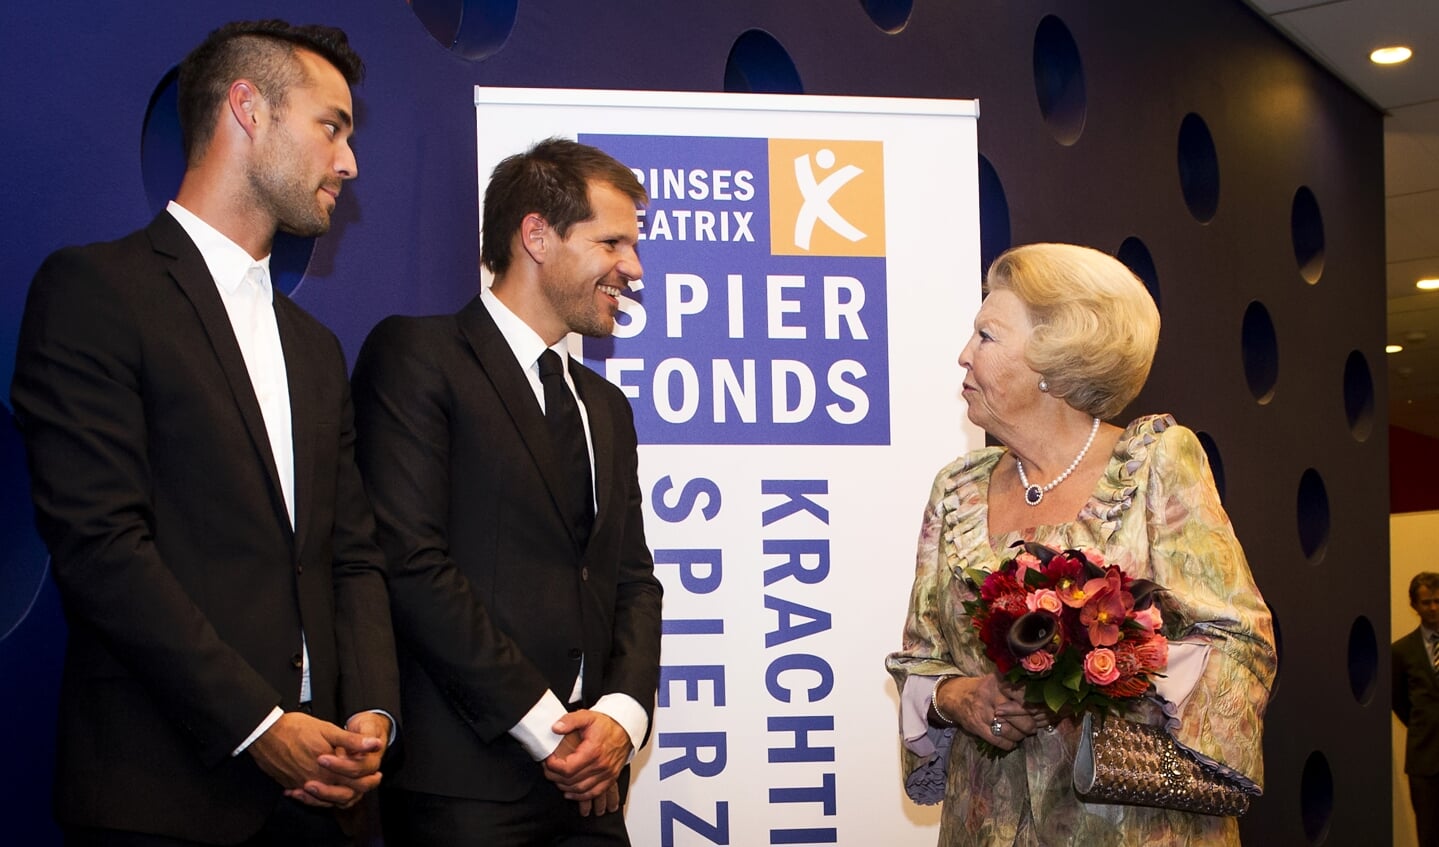 Het Prinses Beatrix Spierfonds verloor 37 procent van de reputatie na een naamswijziging. 